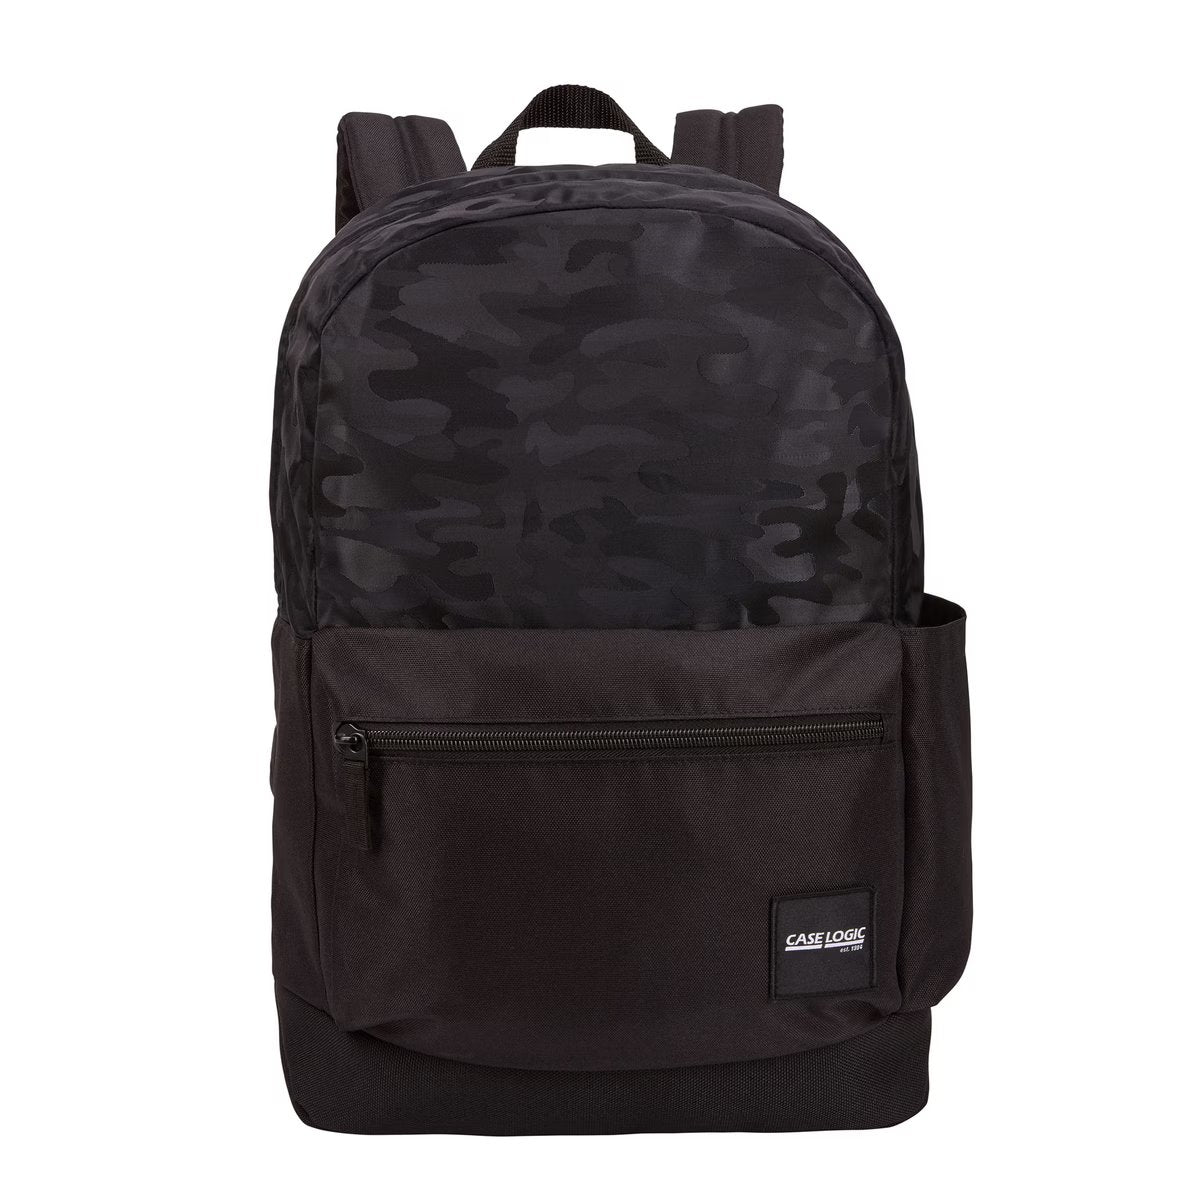 Case Logic SLRC-206 Backpack Bag - Case Logic : Flipkart.com